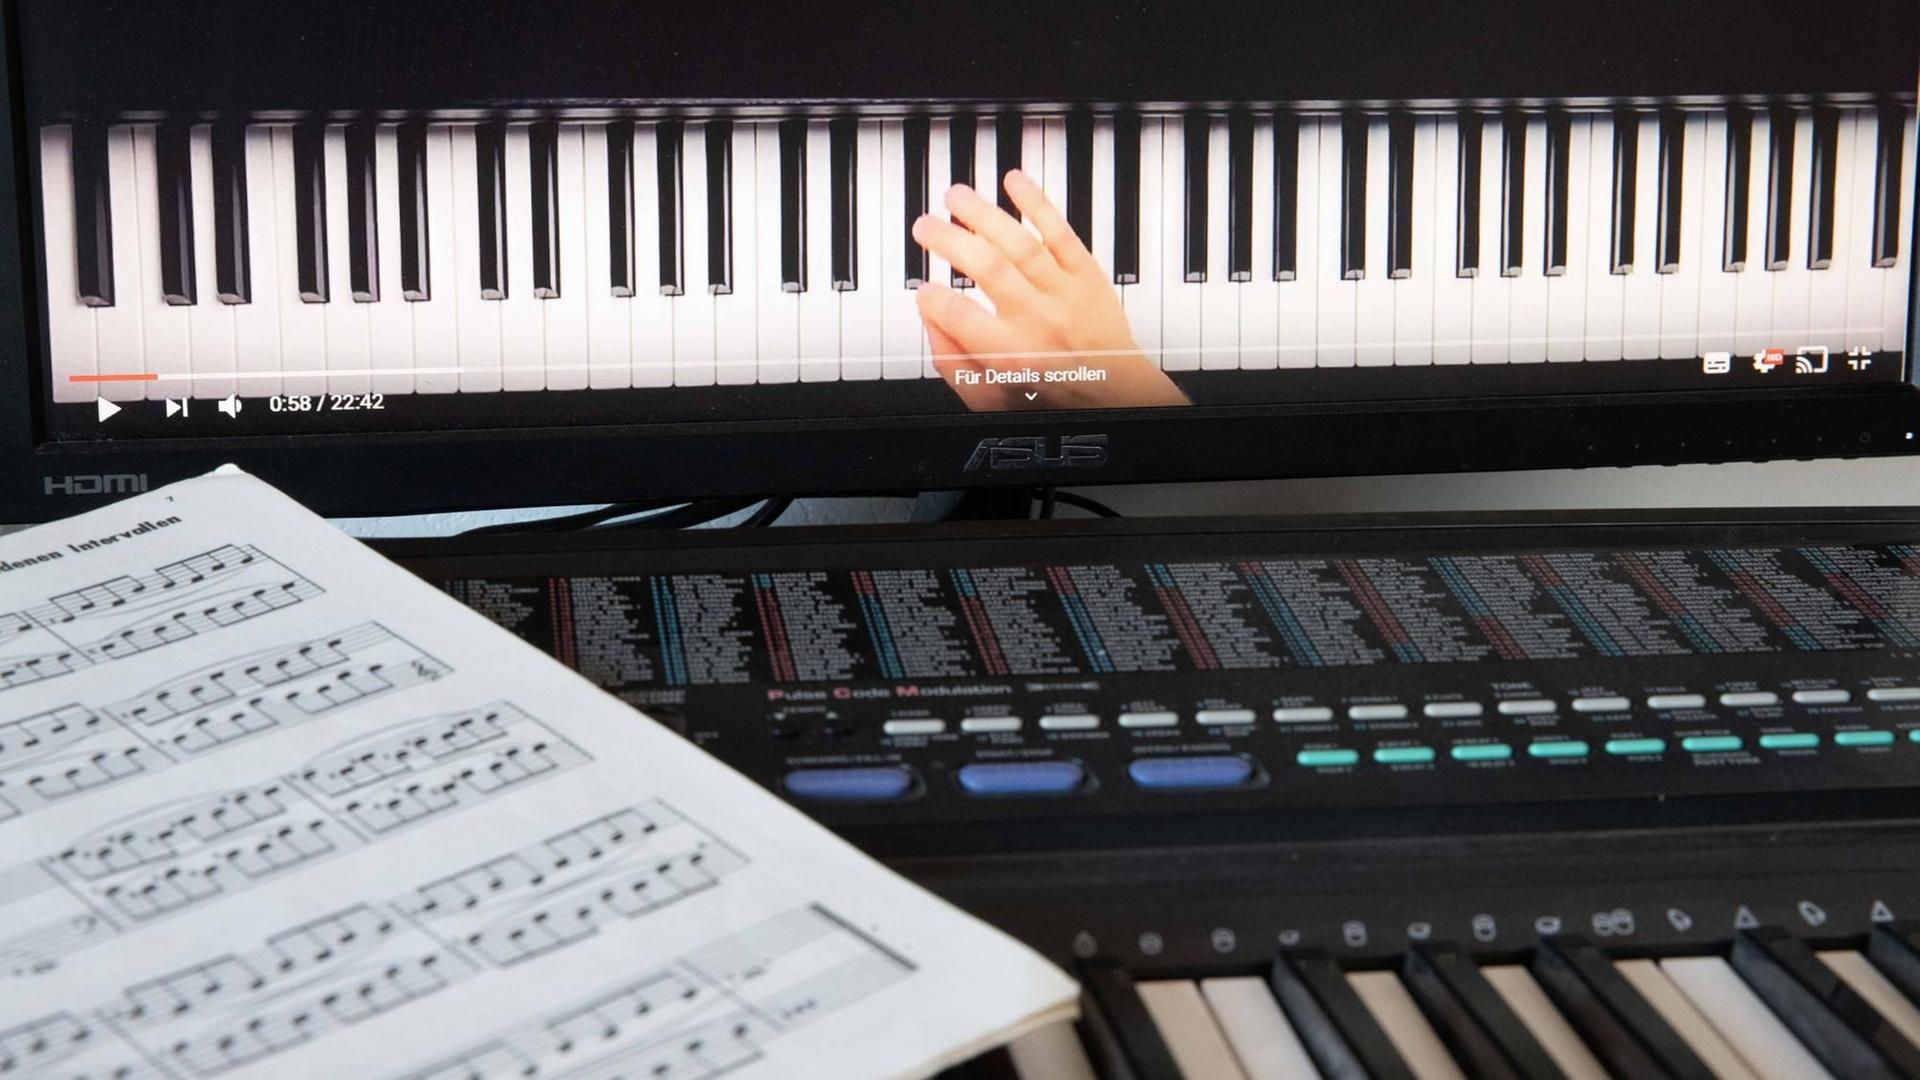 Musikschulunterricht via Skype: Ein Notenblatt liegt auf einem Keyboard, dahinter ist ein Bildschirm aufgebaut, auf dem eine Hand auf einer Klaviertastatur zu sehen ist.